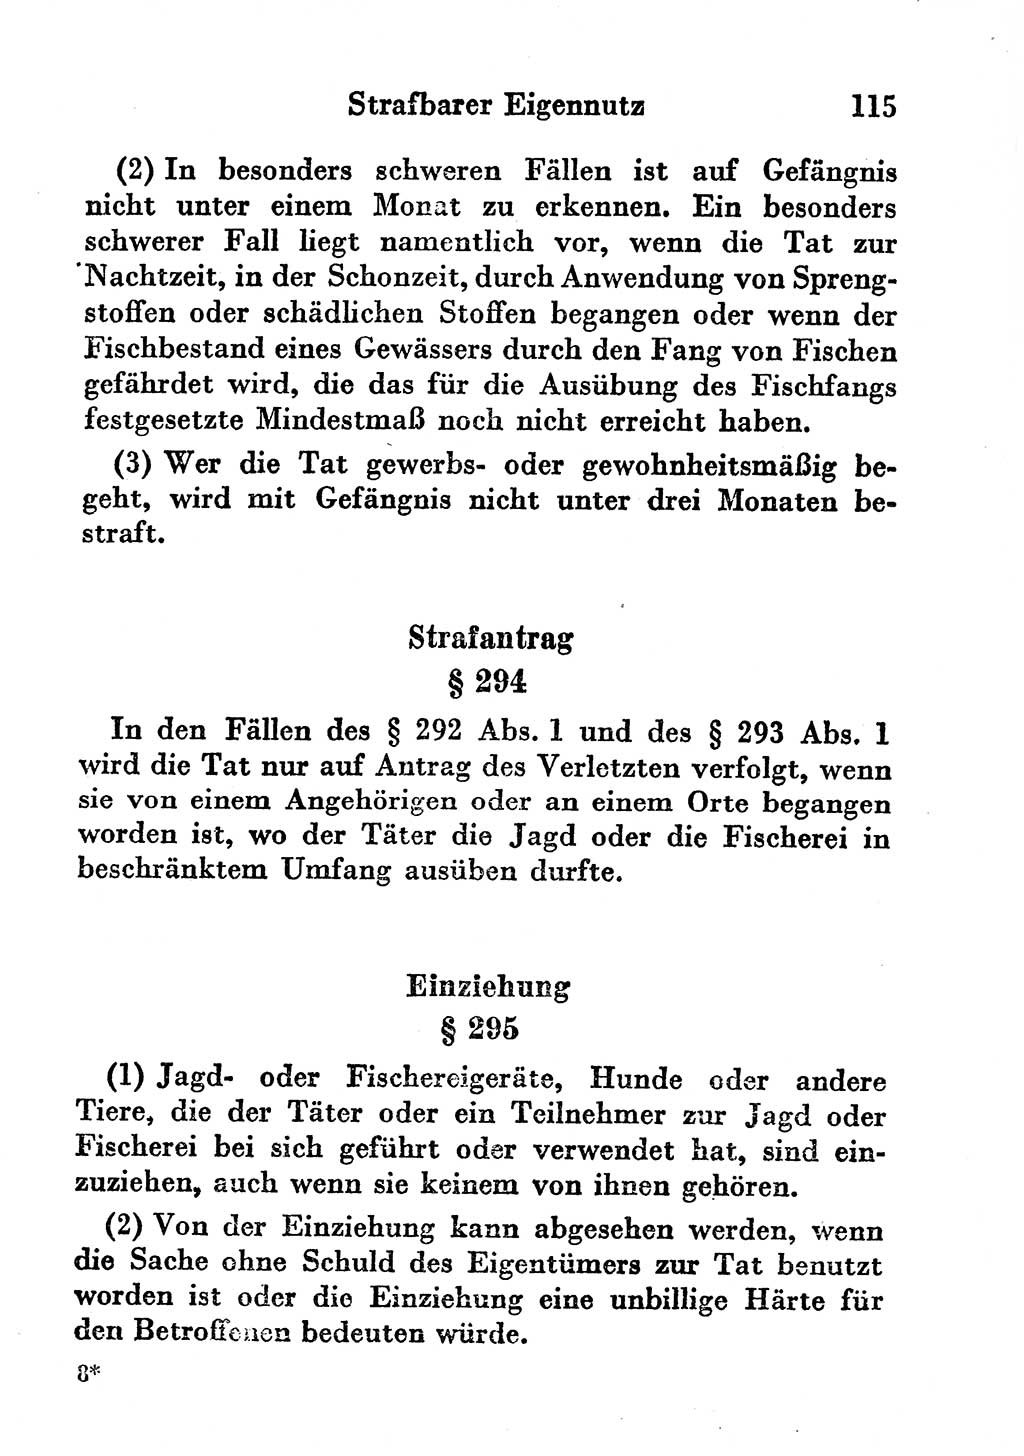 Strafgesetzbuch (StGB) und andere Strafgesetze [Deutsche Demokratische Republik (DDR)] 1956, Seite 115 (StGB Strafges. DDR 1956, S. 115)